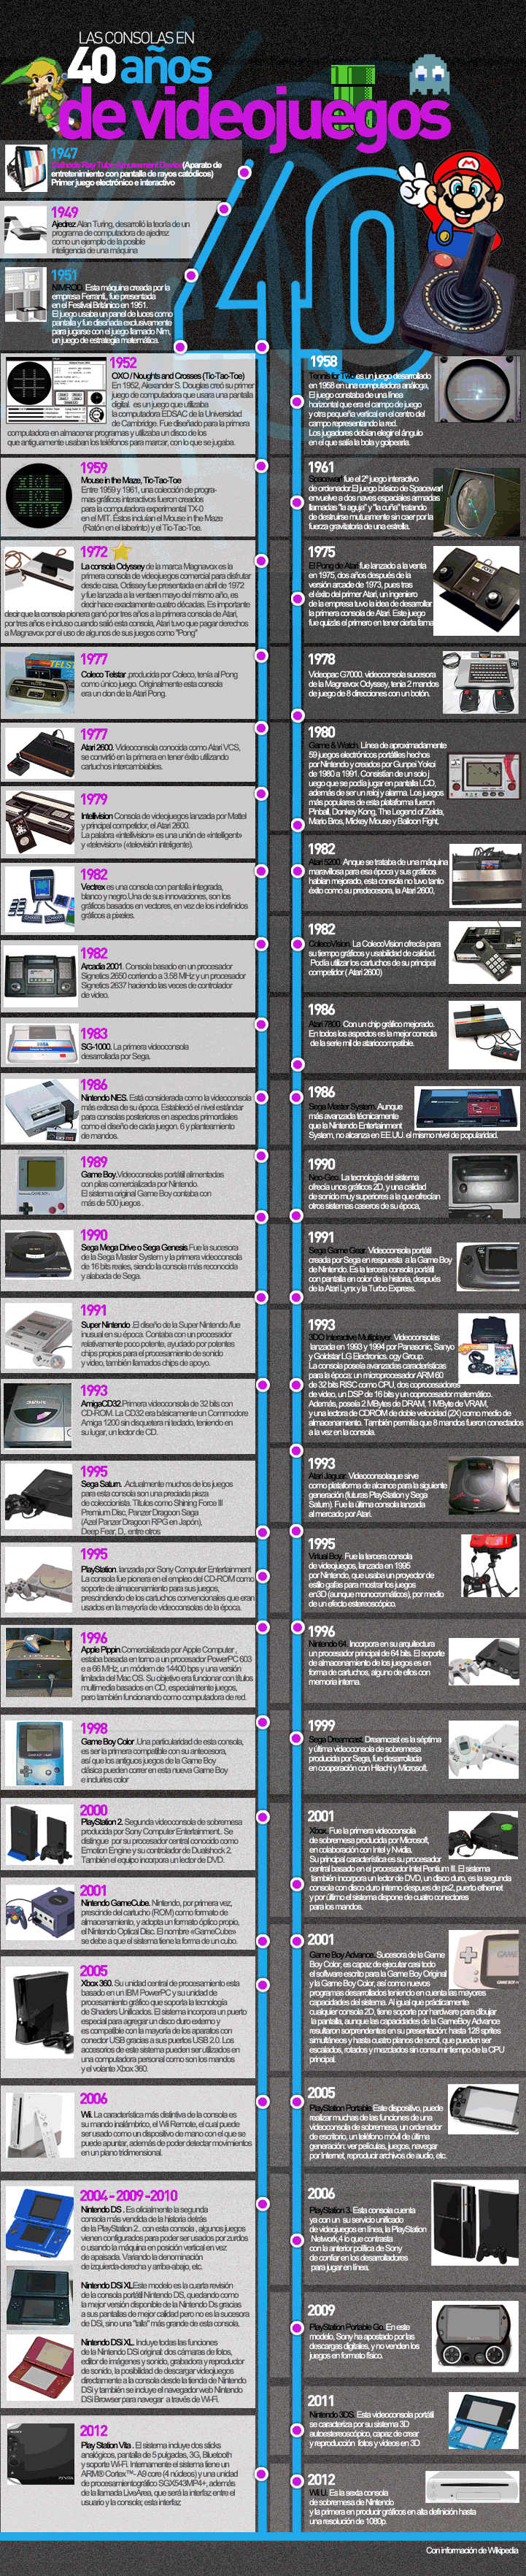 timeline de las consolas de videojuegos